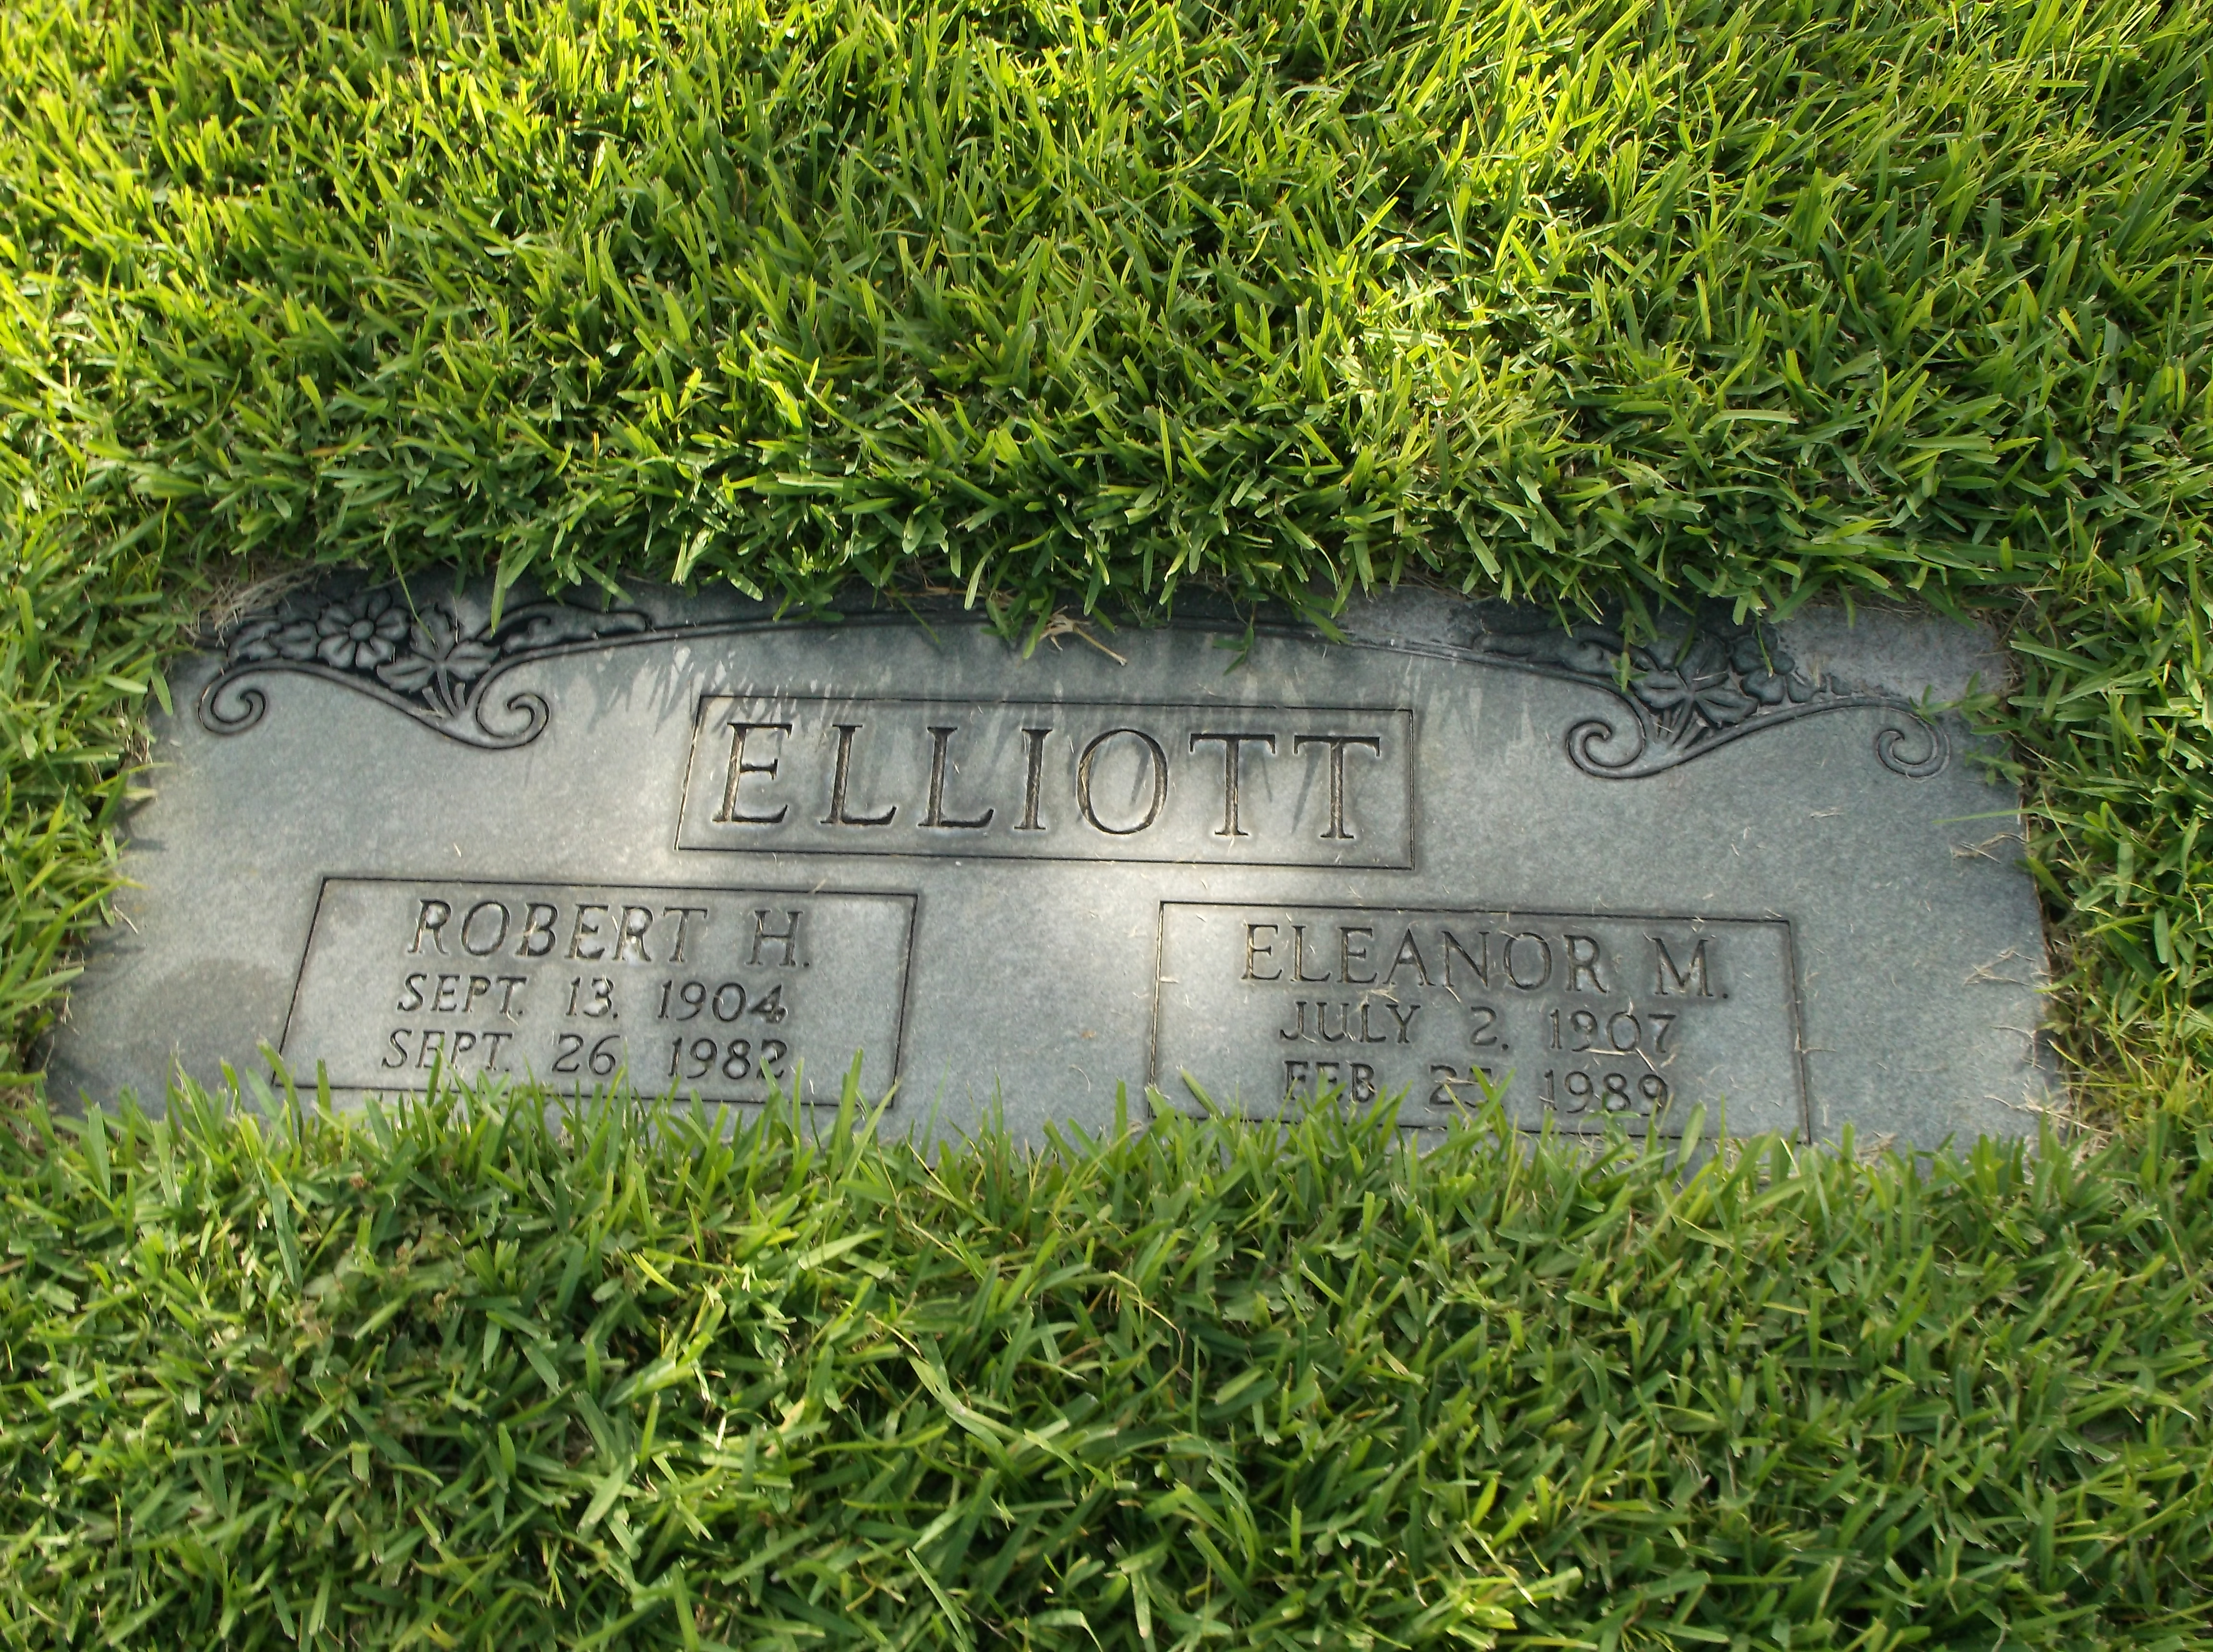 Eleanor M Elliott